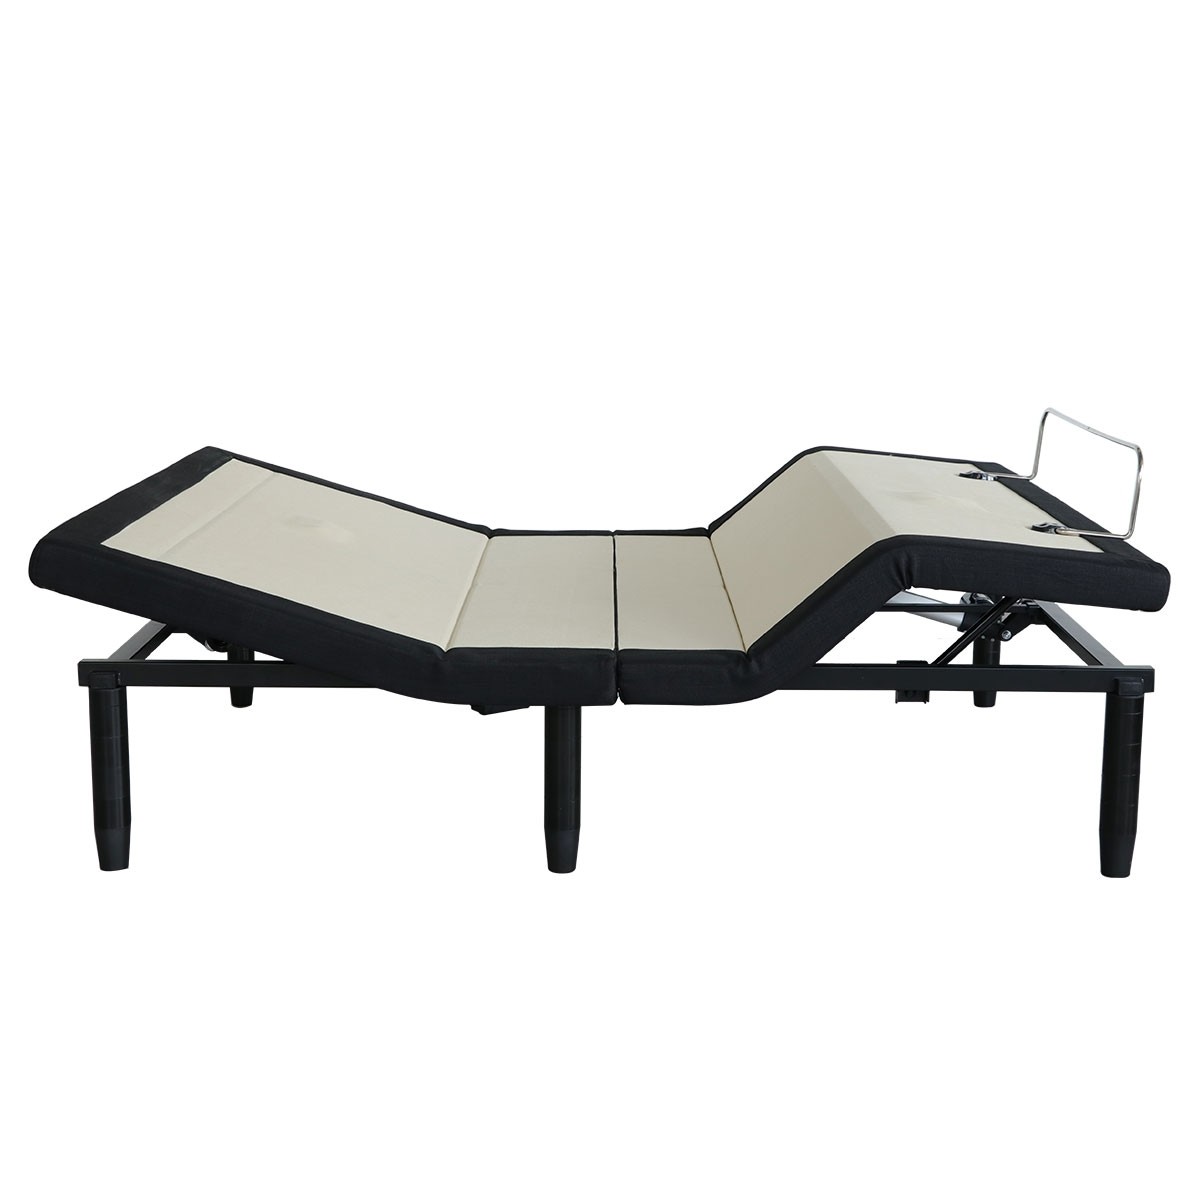 PROFEXIONAL Adjustable Electric Bed (UPS1530-Queen 60*80)